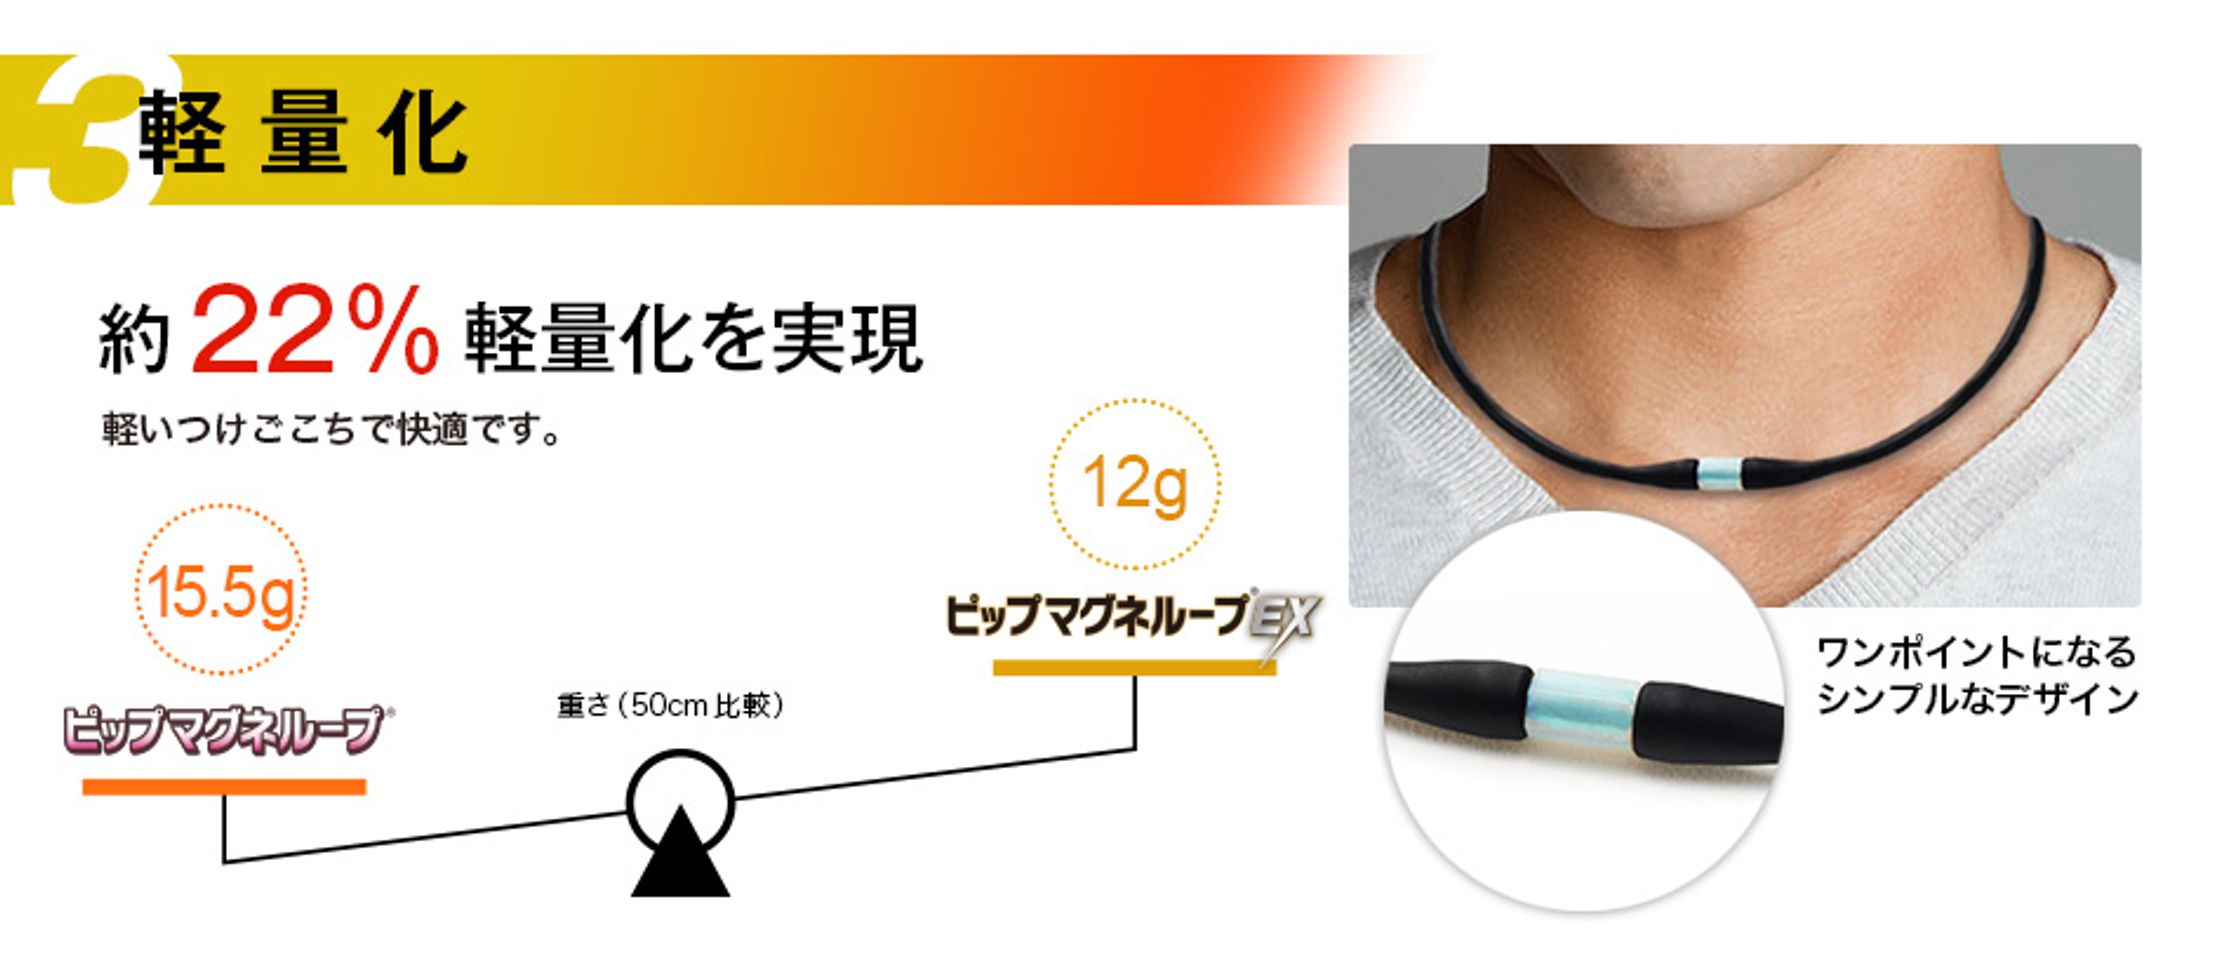 Vòng điều hòa huyết áp Nhật Bản EX Pip Magneloop